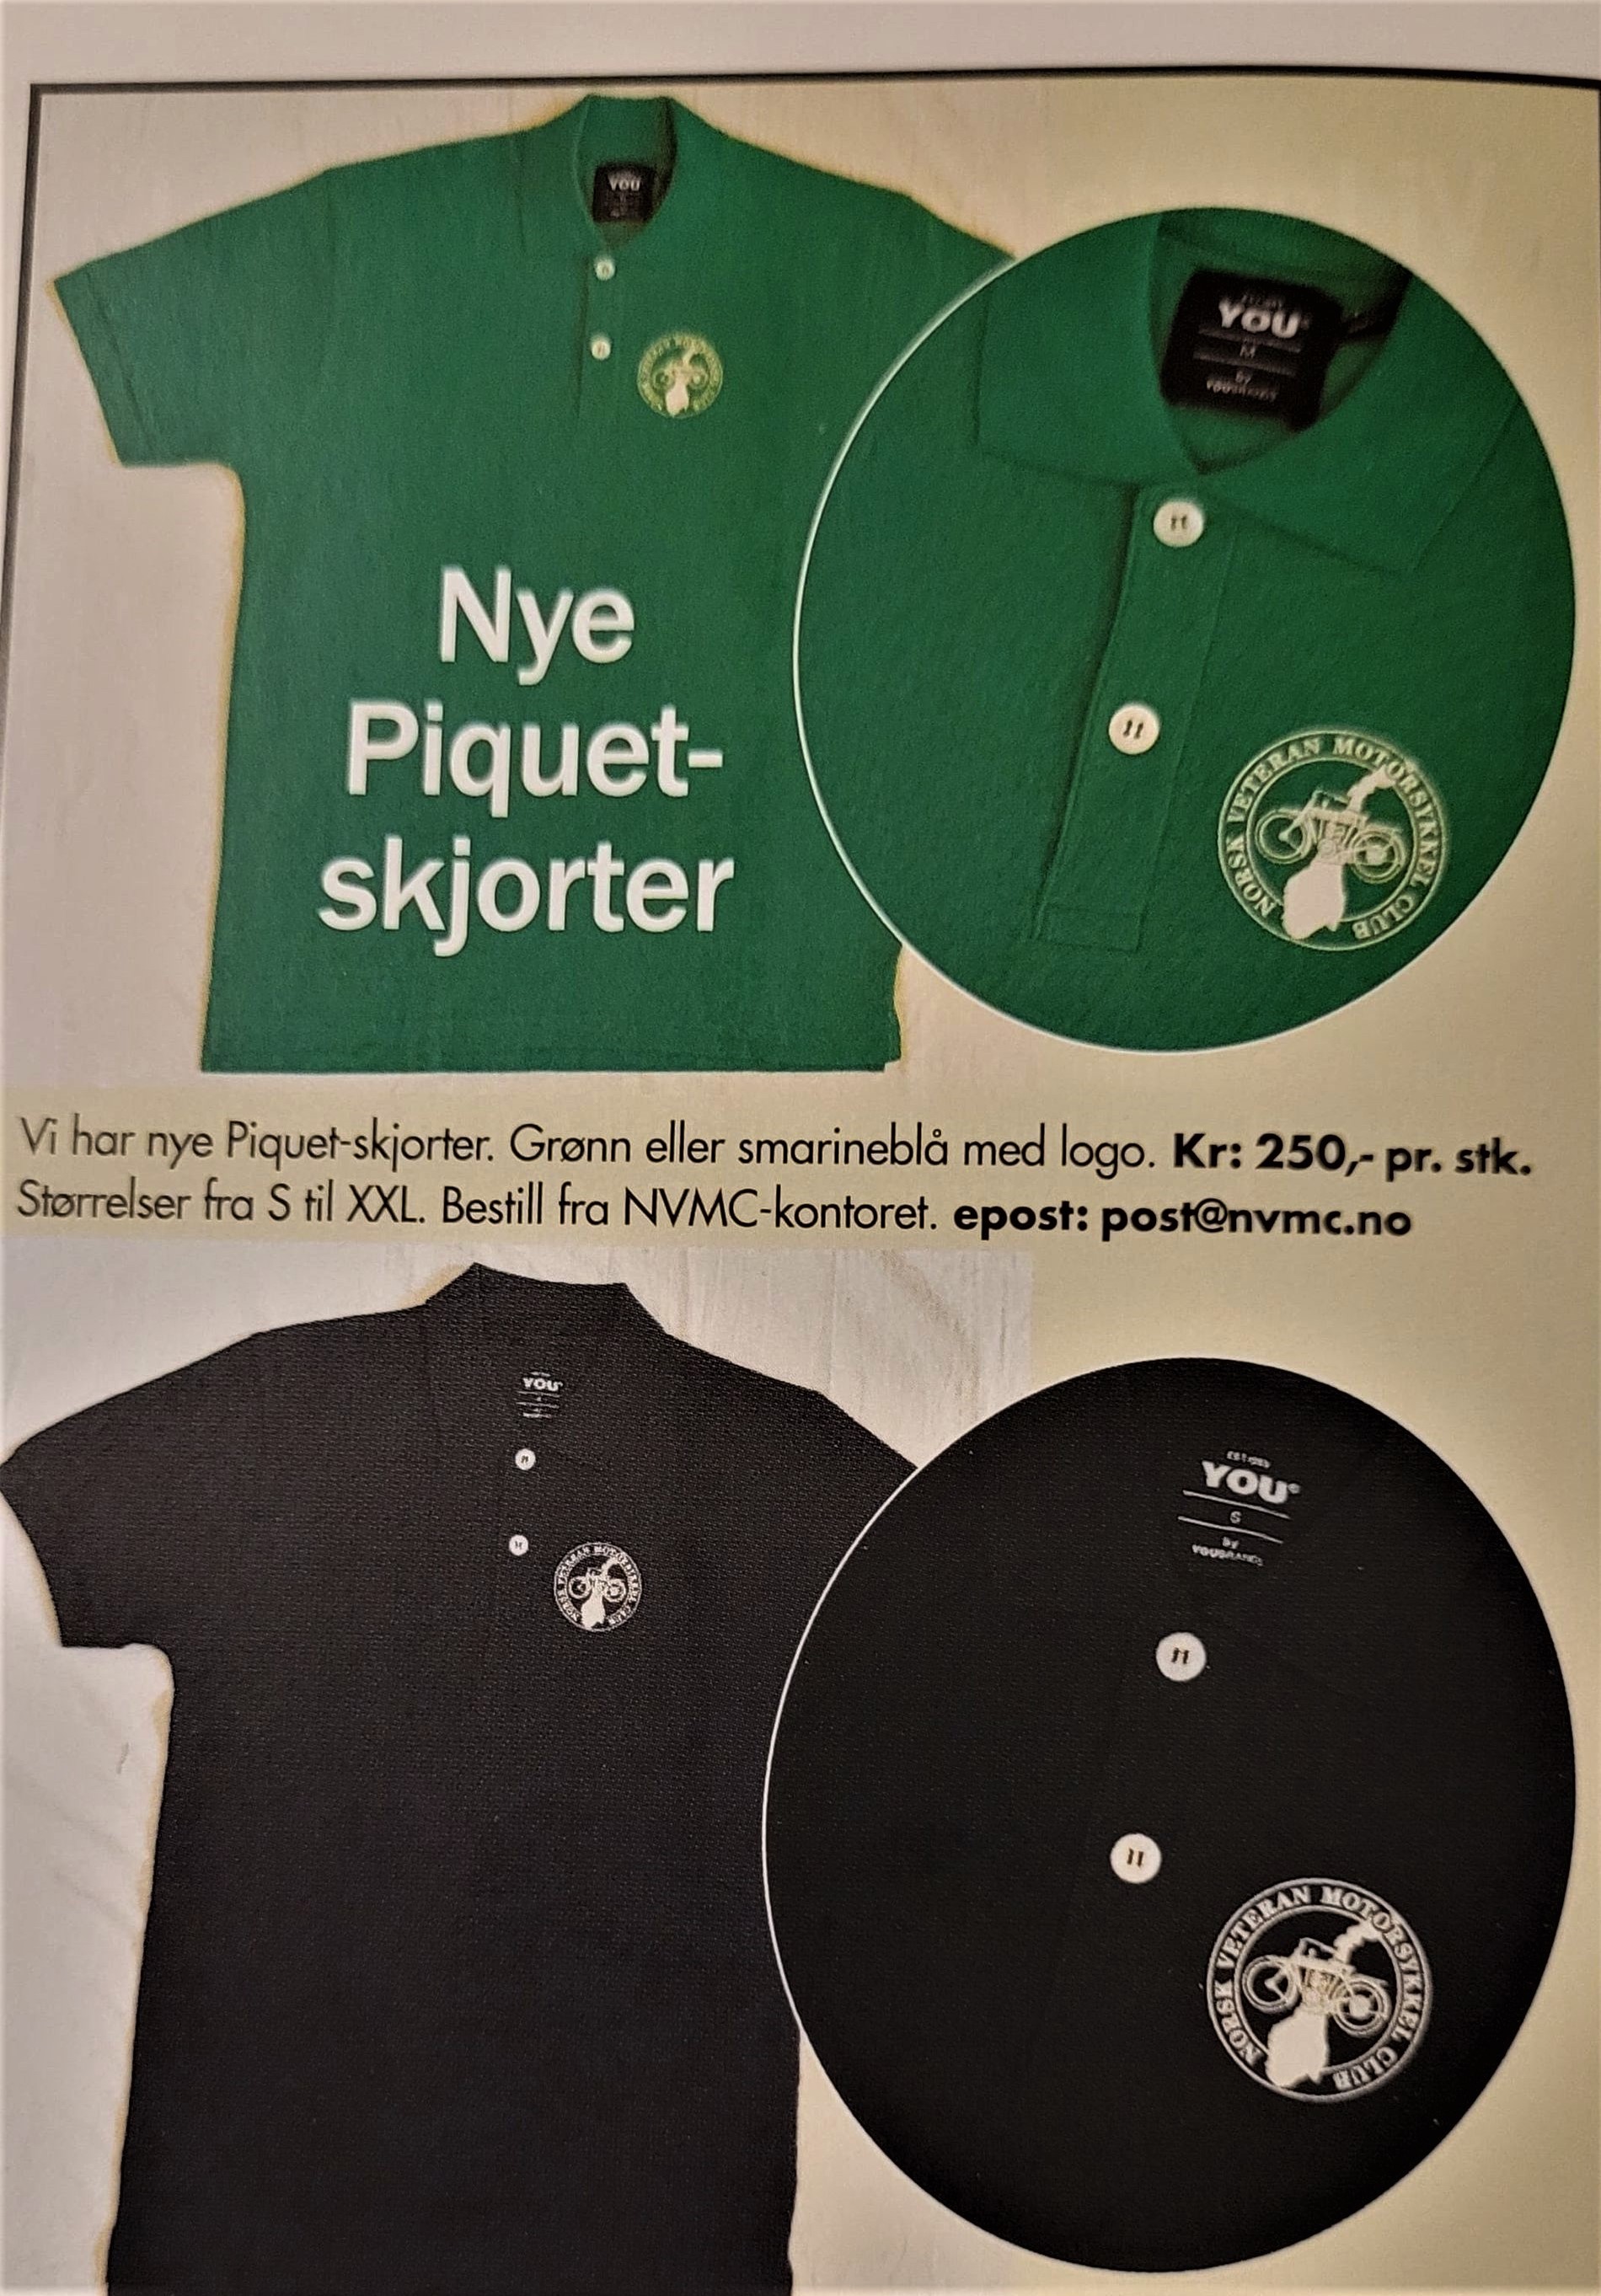 Piquet-skjorter